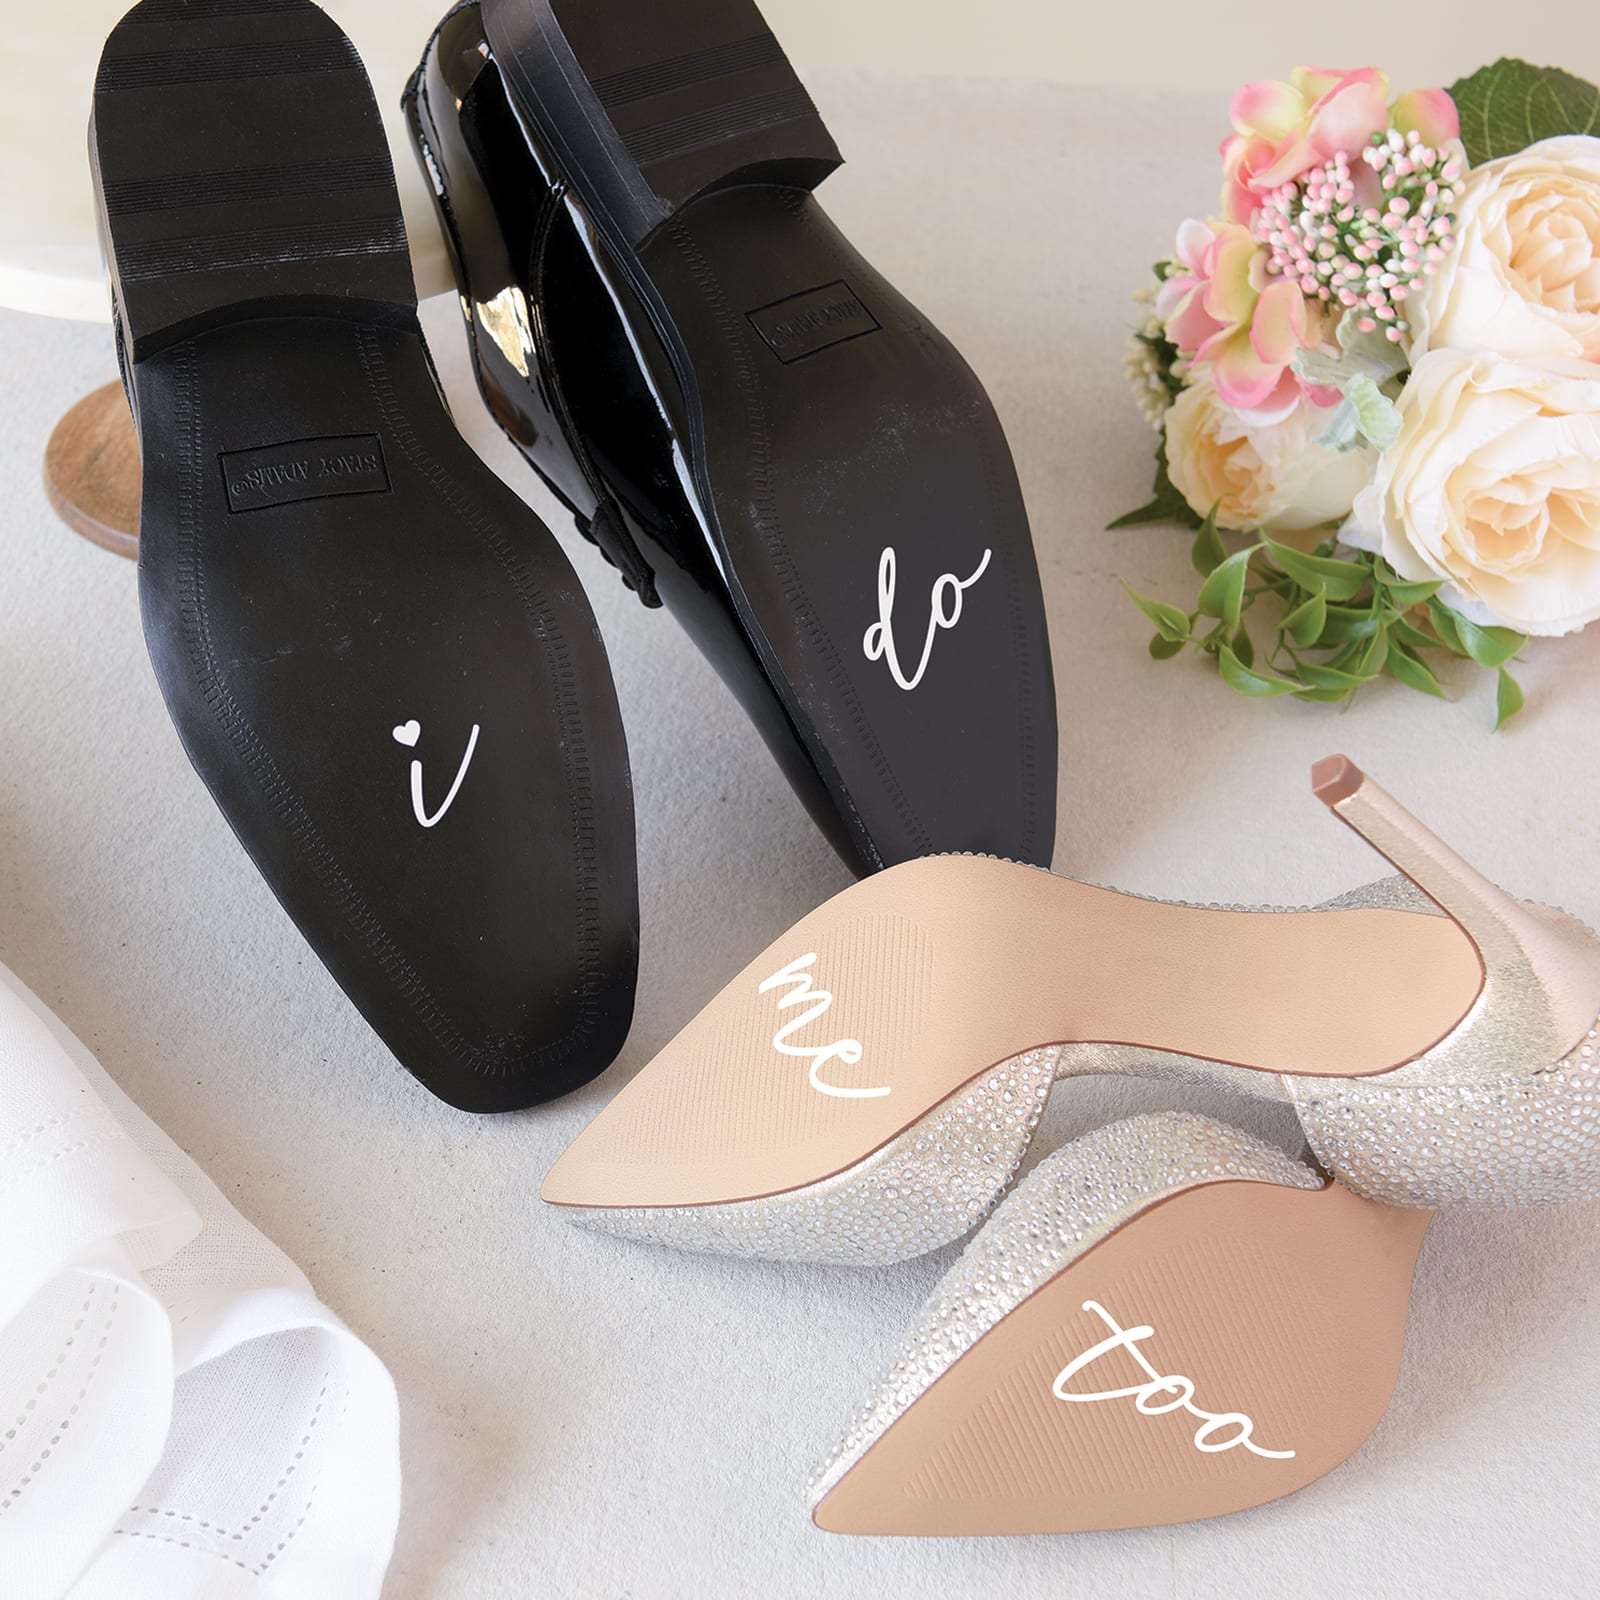 Vinyl Shoe Decals Disney Wedding Shoe Decals for Wedding Personalized Disney Wedding Shoe Decals Custom Shoe Decals Wedding Shoe Decals